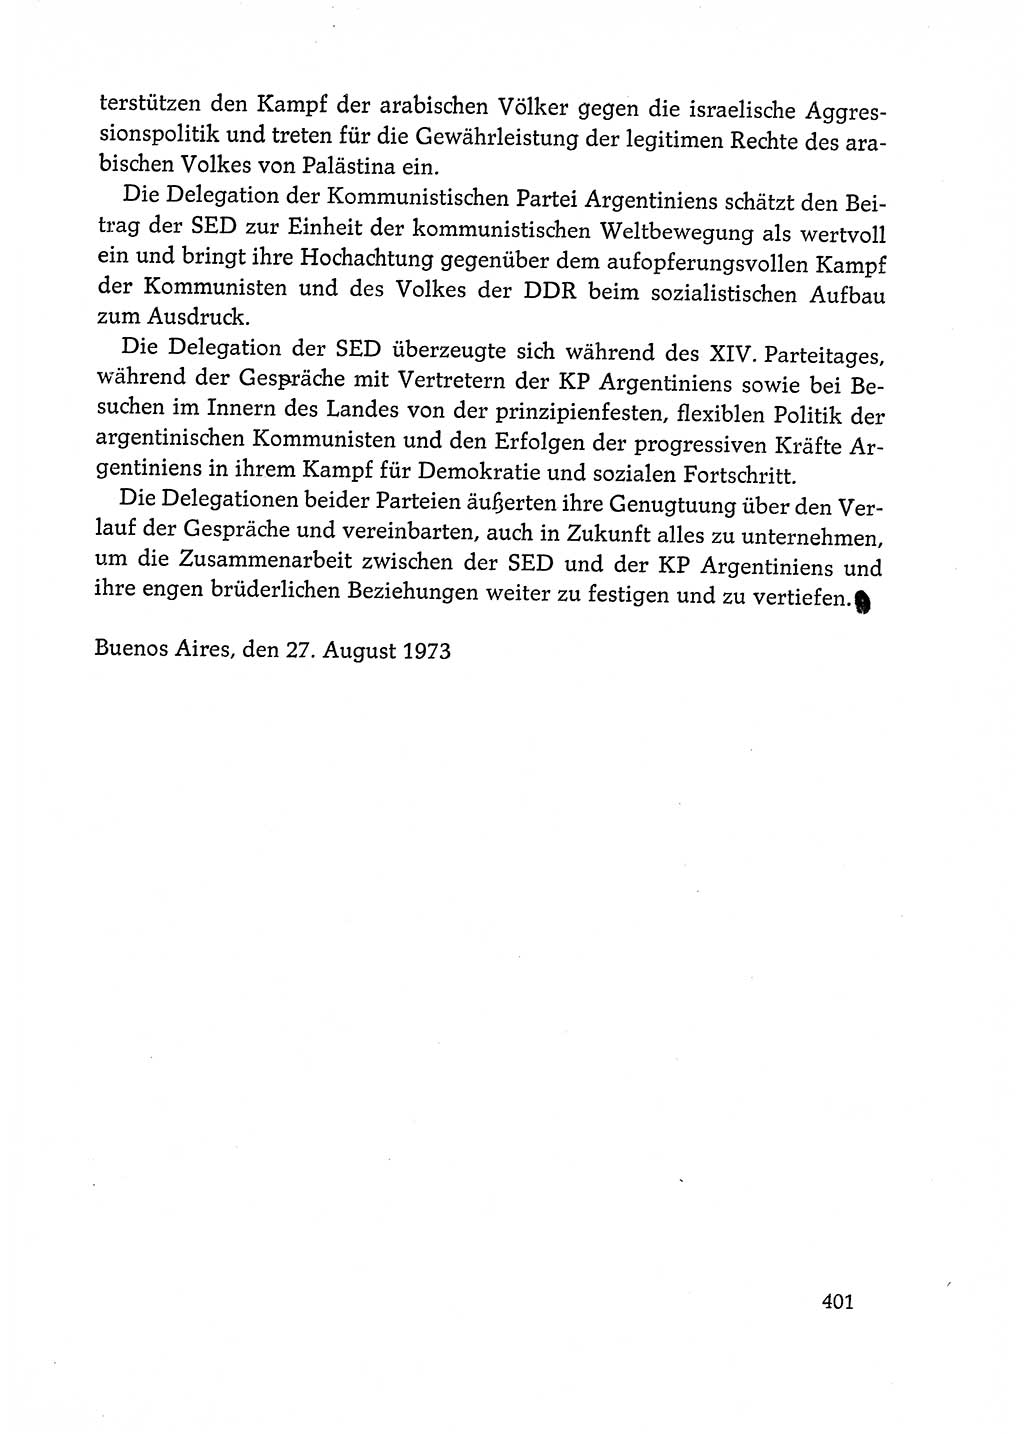 Dokumente der Sozialistischen Einheitspartei Deutschlands (SED) [Deutsche Demokratische Republik (DDR)] 1972-1973, Seite 401 (Dok. SED DDR 1972-1973, S. 401)